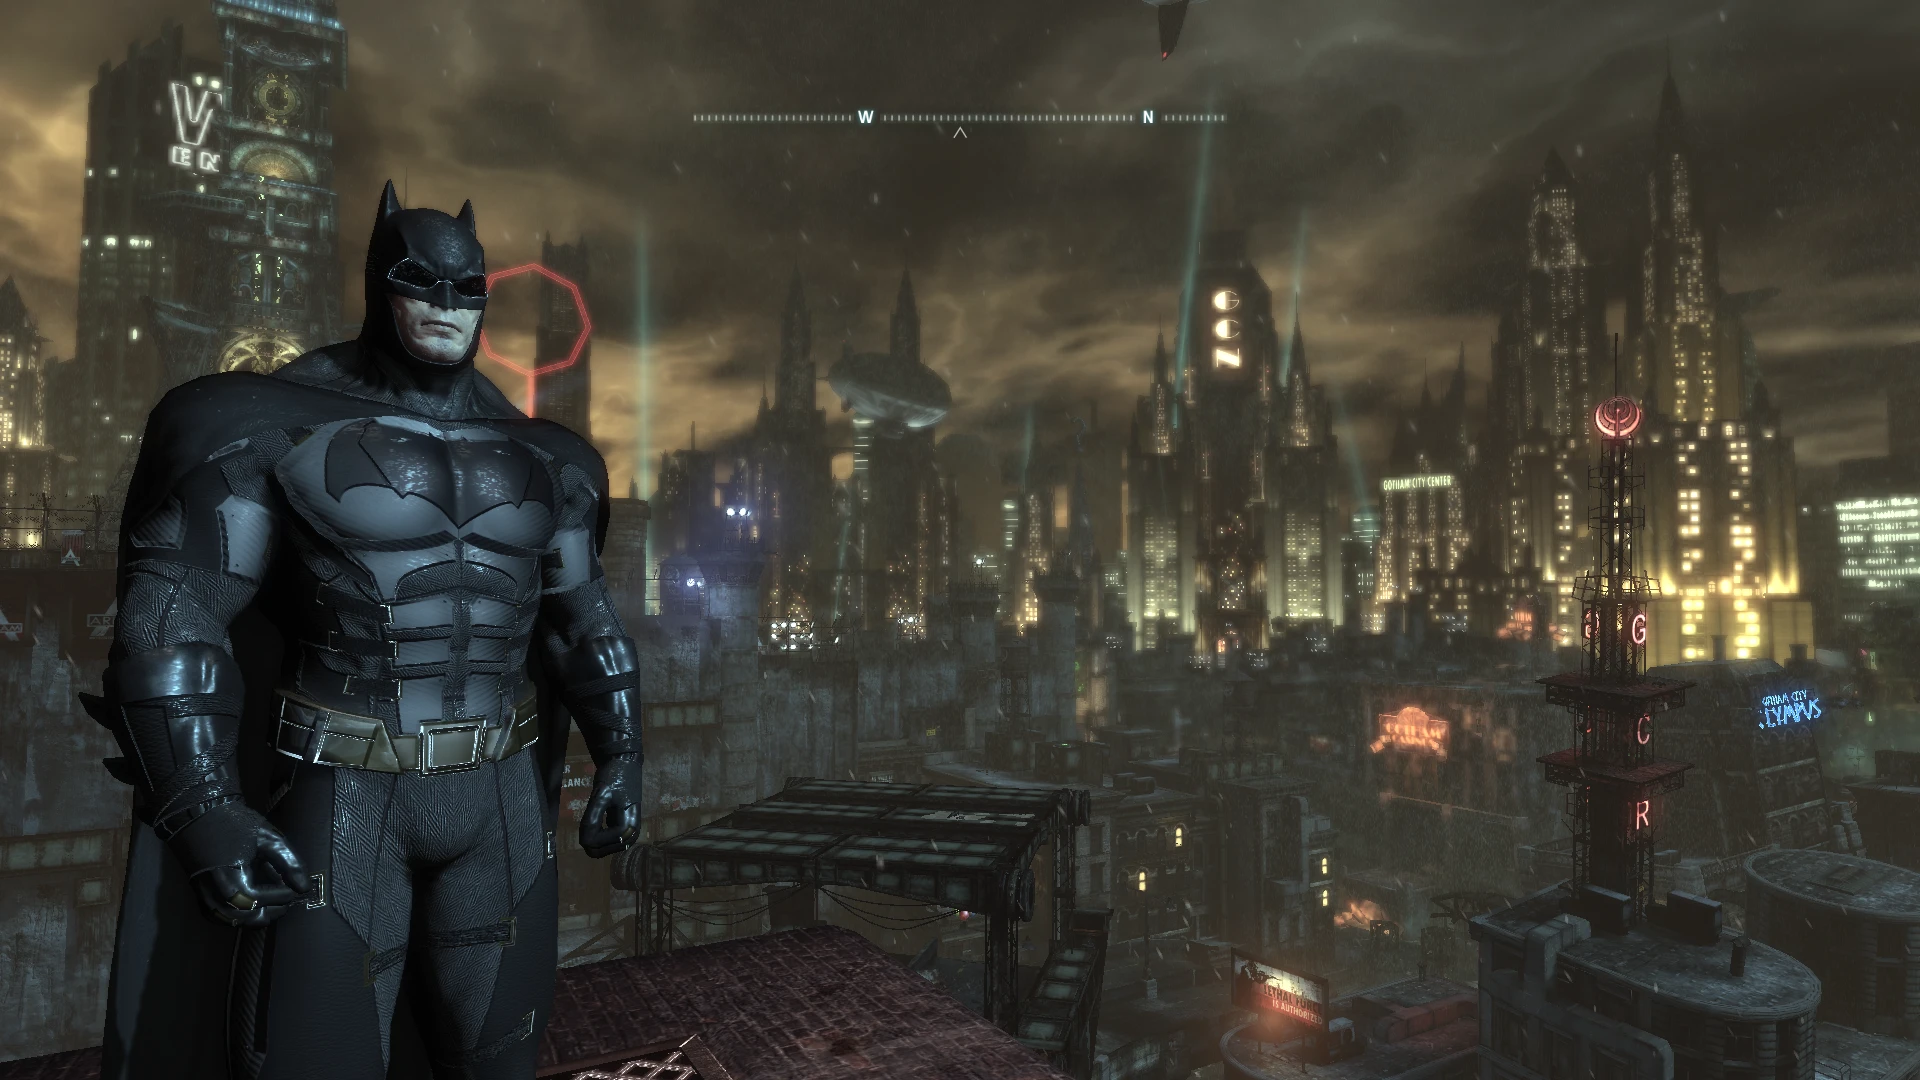 Бэтмен Аркхем кнайт. Batfleck Arkham Knight Suit Mod. Бэтмен: нулевой год.